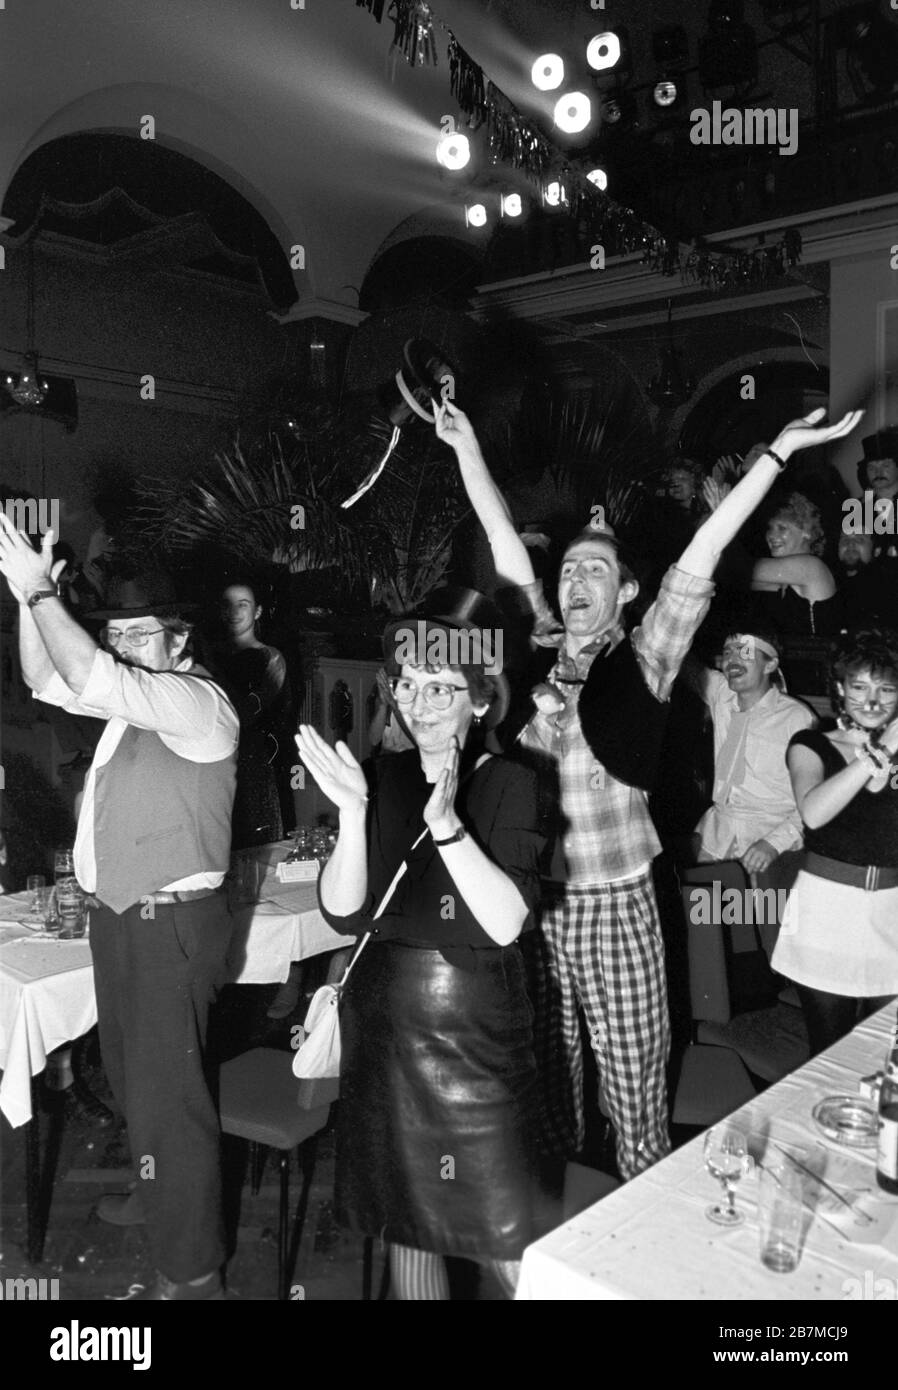 15 febbraio 1989, Sassonia, Lipsia: I club del carnevale e del carnevale di Lipsia si riuniscono nel febbraio 1989 nel ristorante âFelsenkellerâ di Lipsia per la loro riunione annuale e mostrano estratti dai loro programmi. Data esatta di registrazione non nota. Foto: Volkmar Heinz/dpa-Zentralbild/ZB Foto Stock